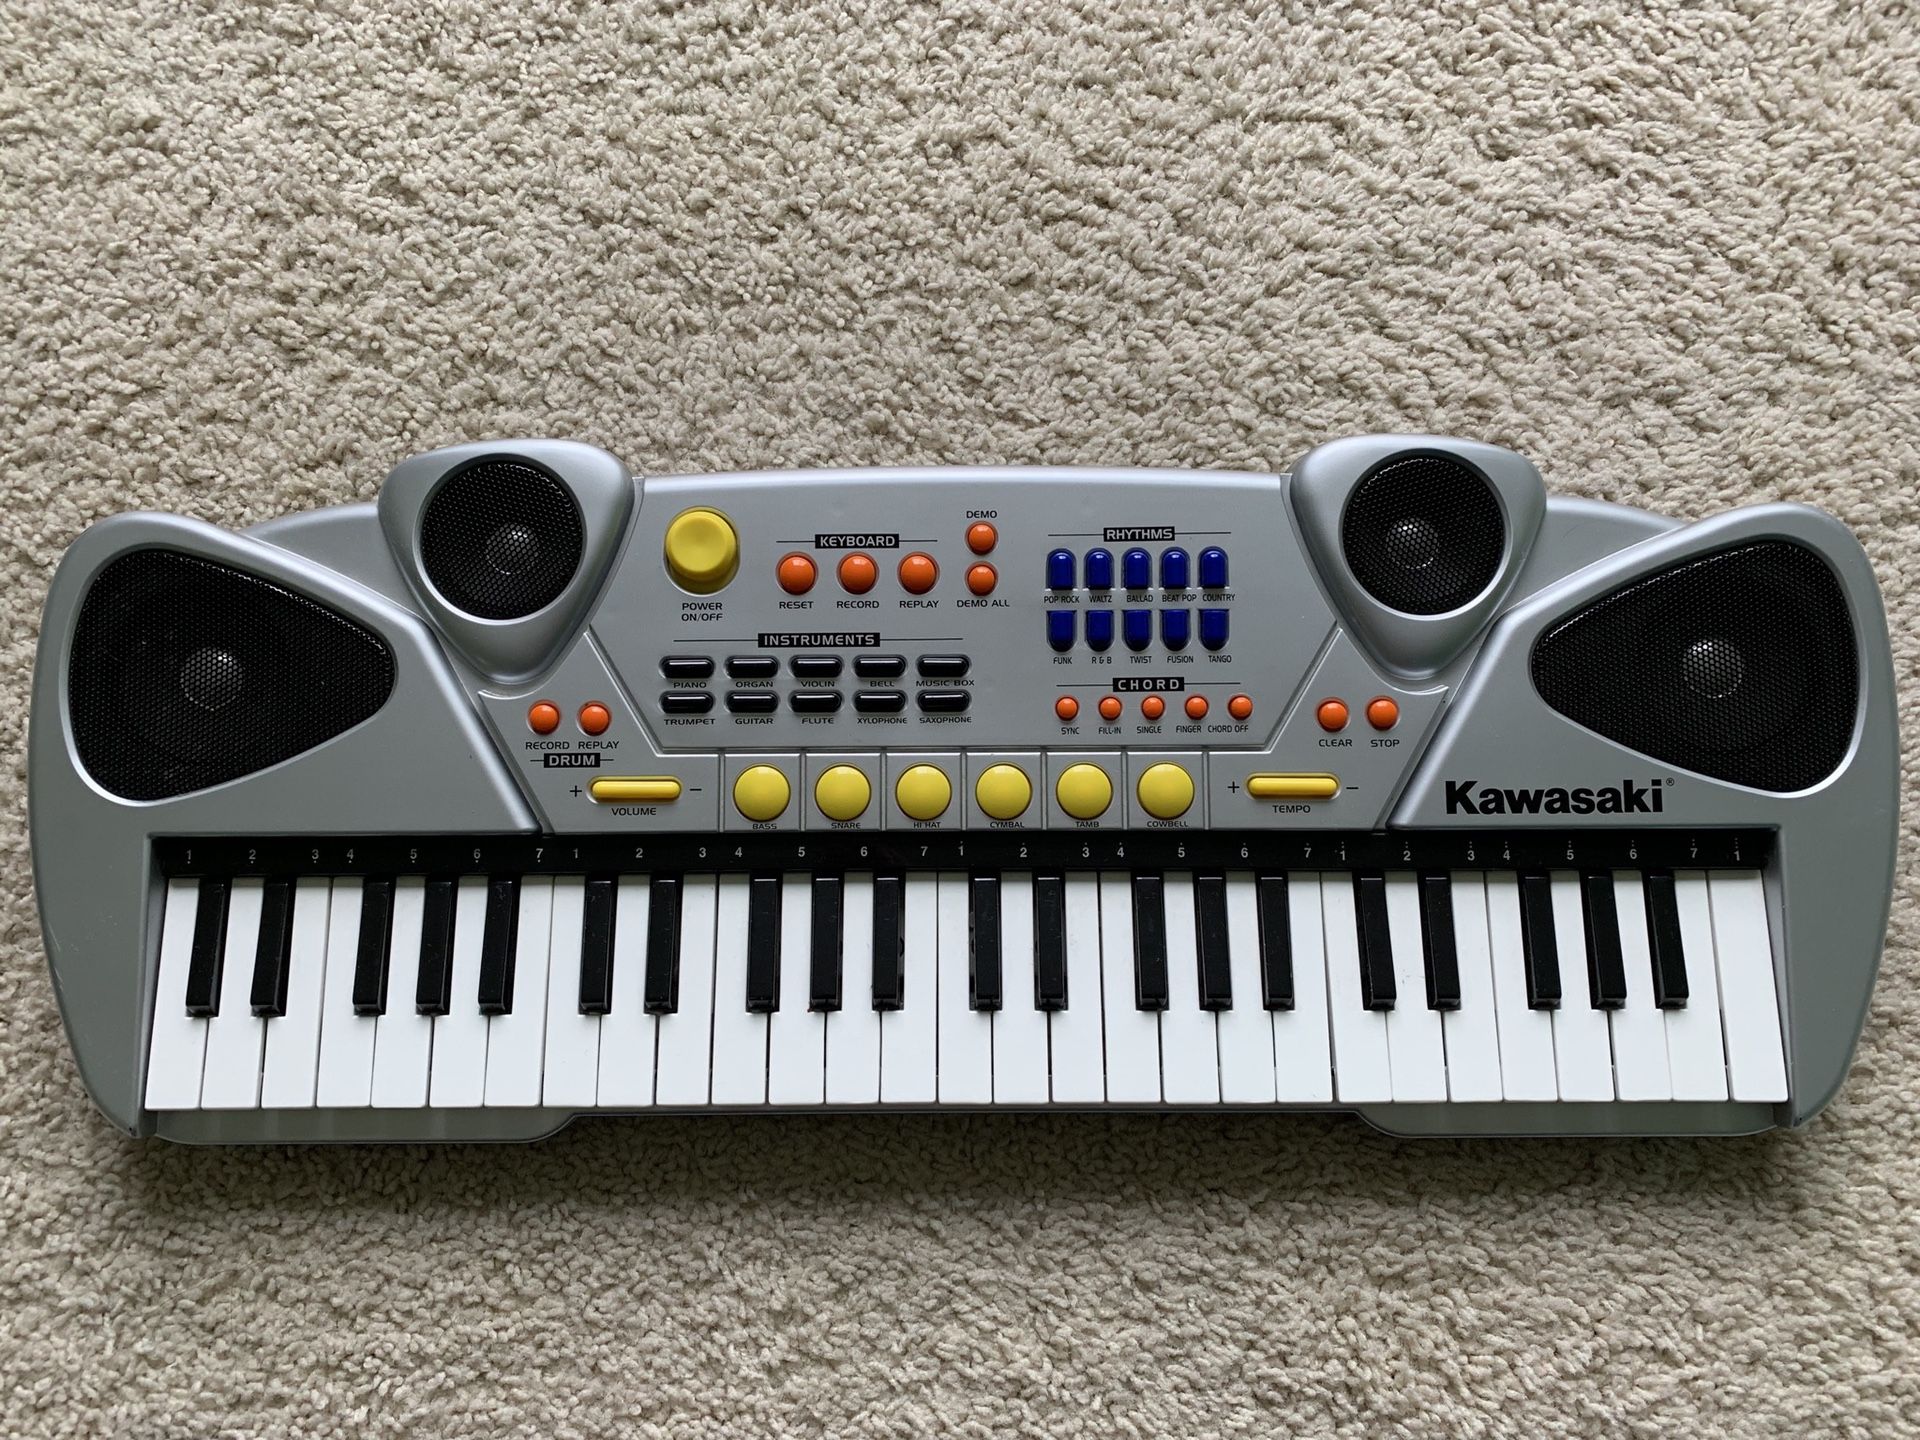 Kawasaki 49-key Musical Keyboard